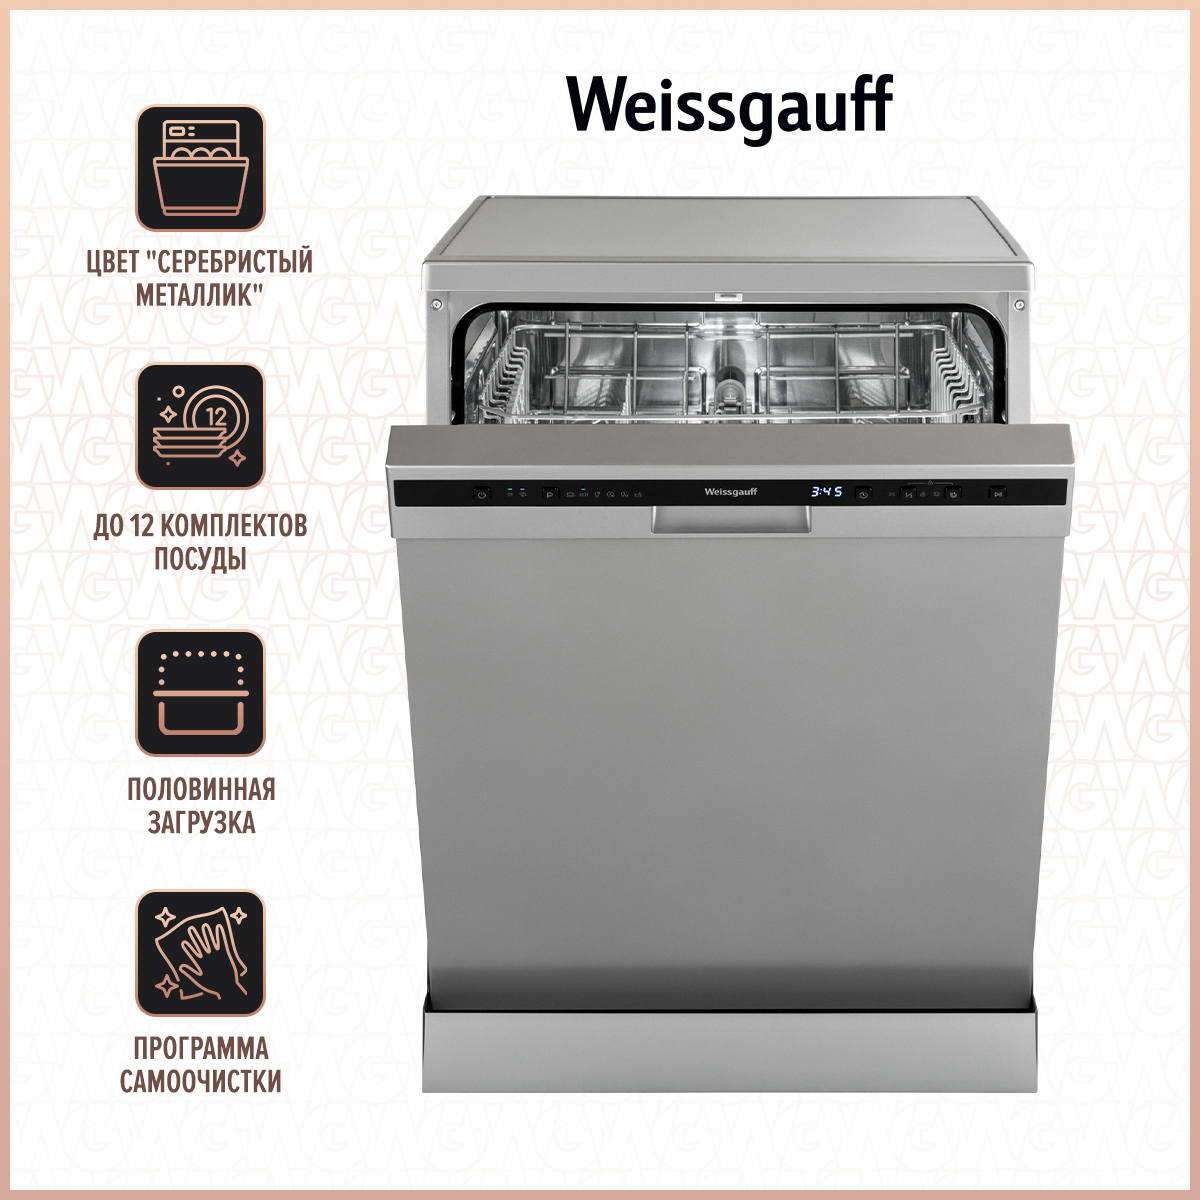 Посудомоечная машина Weissgauff DW 6026 D Silver серебристый посудомоечная машина weissgauff dw 6026 d silver серебристый